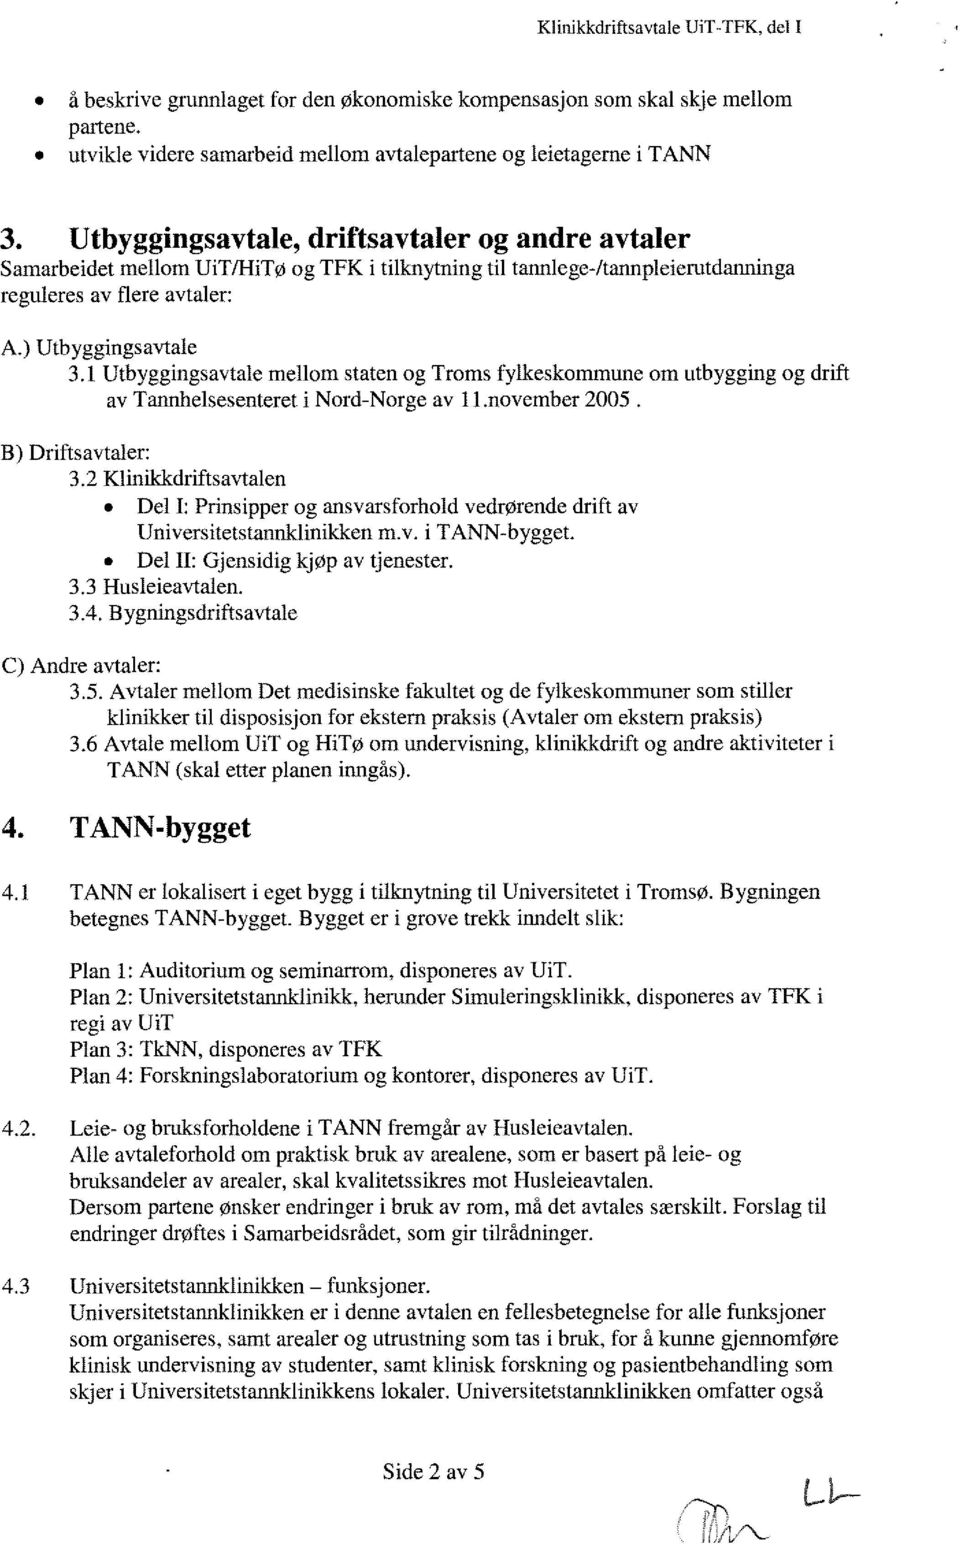 1 Utbyggingsavtale mellom staten og Troms fylkeskommune om utbygging og drift av Tannhelsesenteret i Nord-Norge av li.november 2005. B) Driftsavtaler: 3.